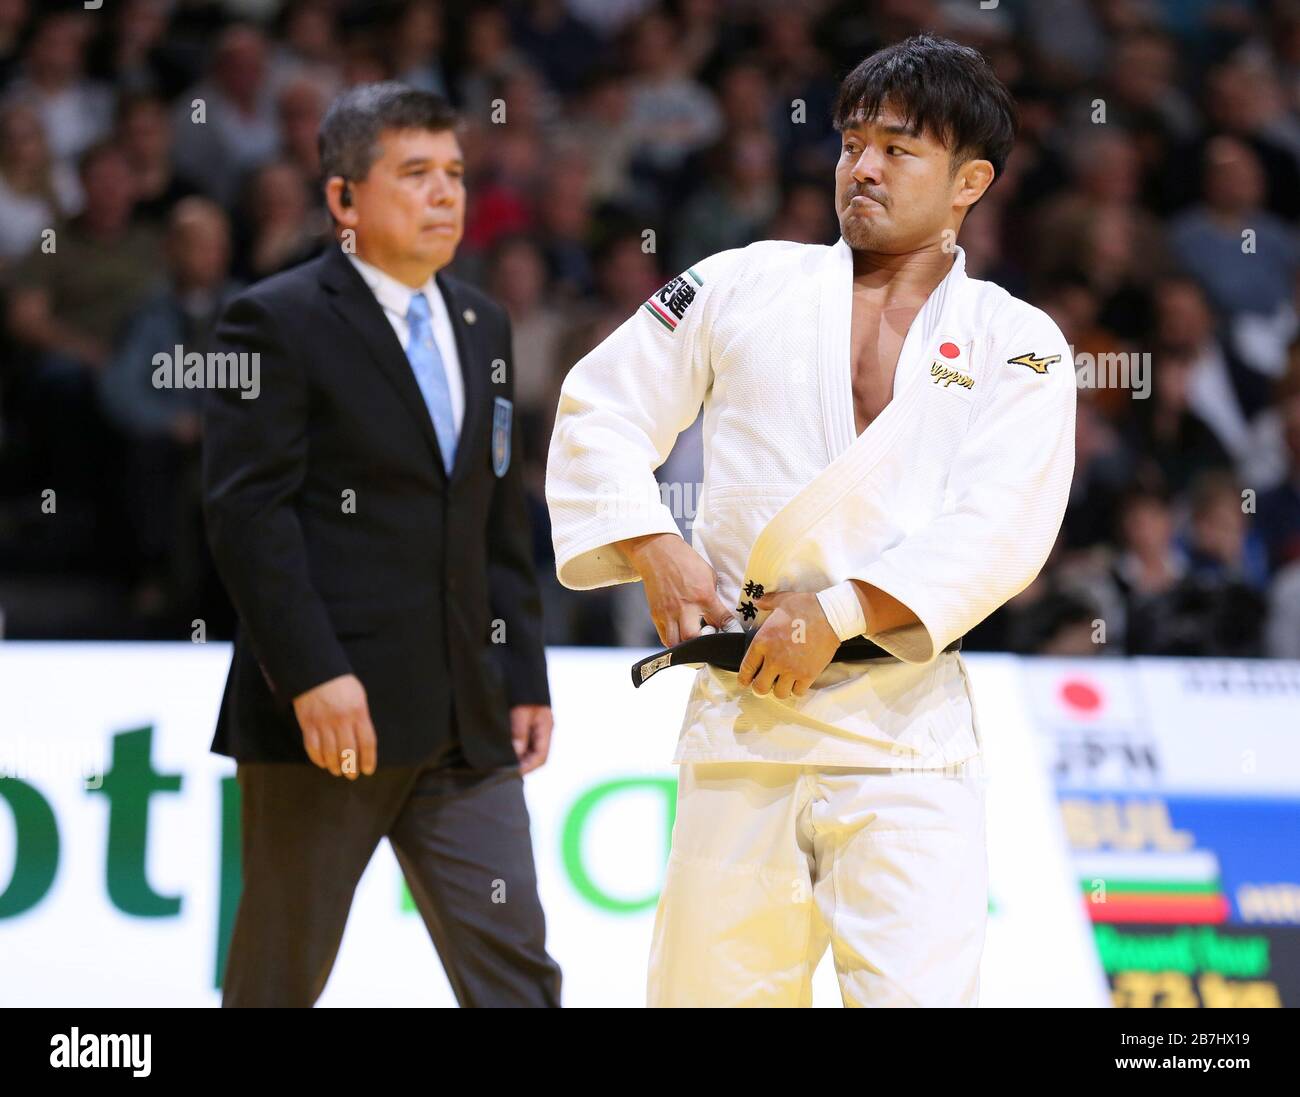 Paris, France - 8 février 2020: Soichi Hashimoto pour le Japon contre Hristov pour la Bulgarie, hommes -73 kg, quatrième manche (crédit: Mickael Chavet) Banque D'Images